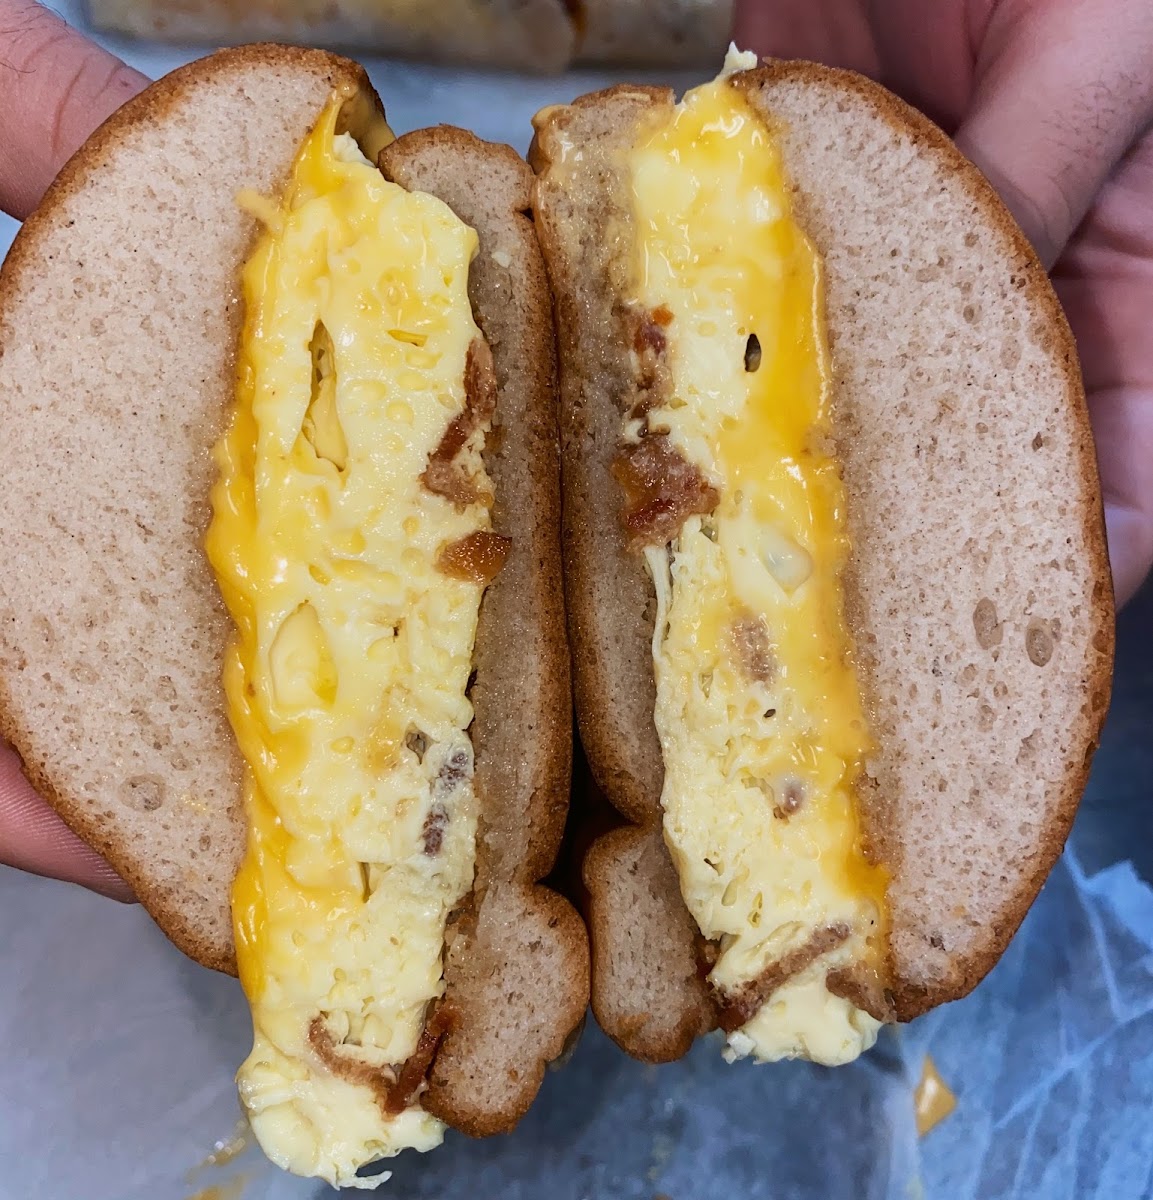 Gluten-Free Breakfast Sandwiches at Everything Bagel